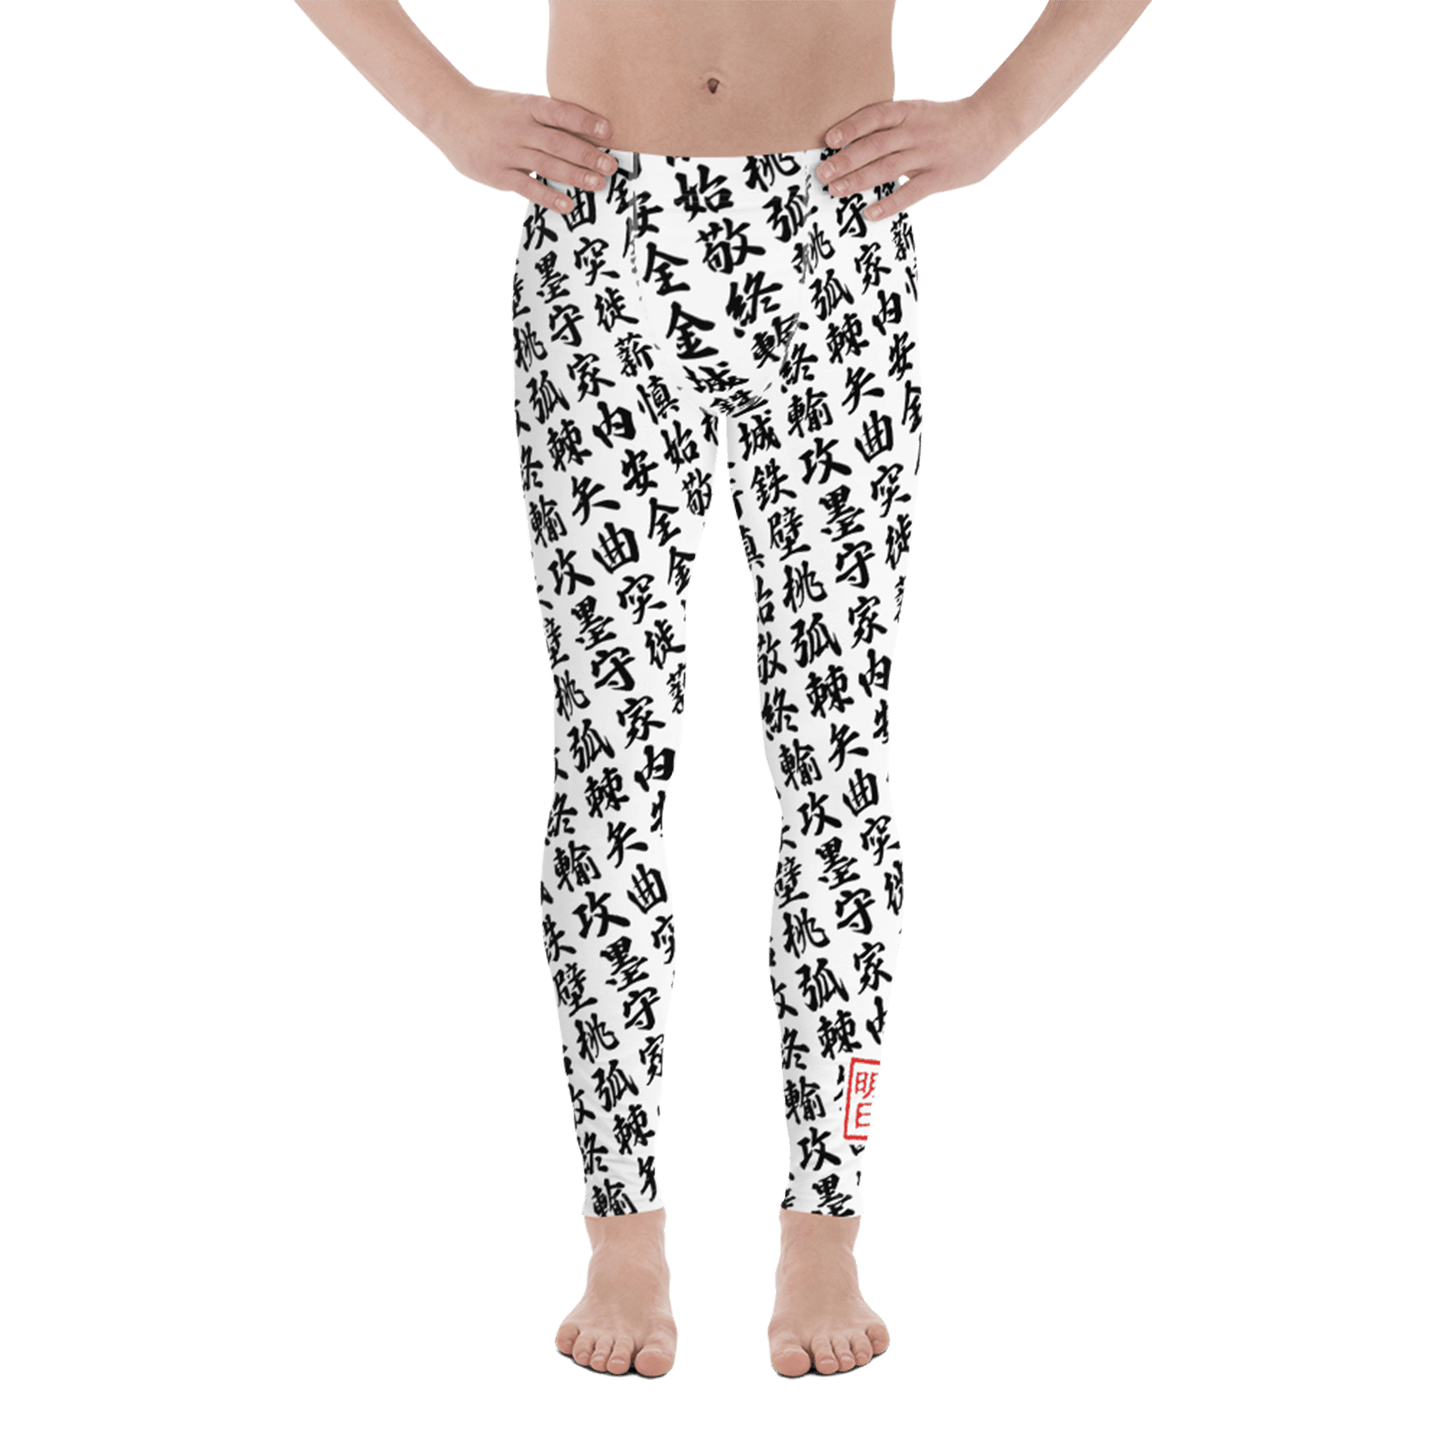 Men white leggings with all-over print in Japanese KANJI